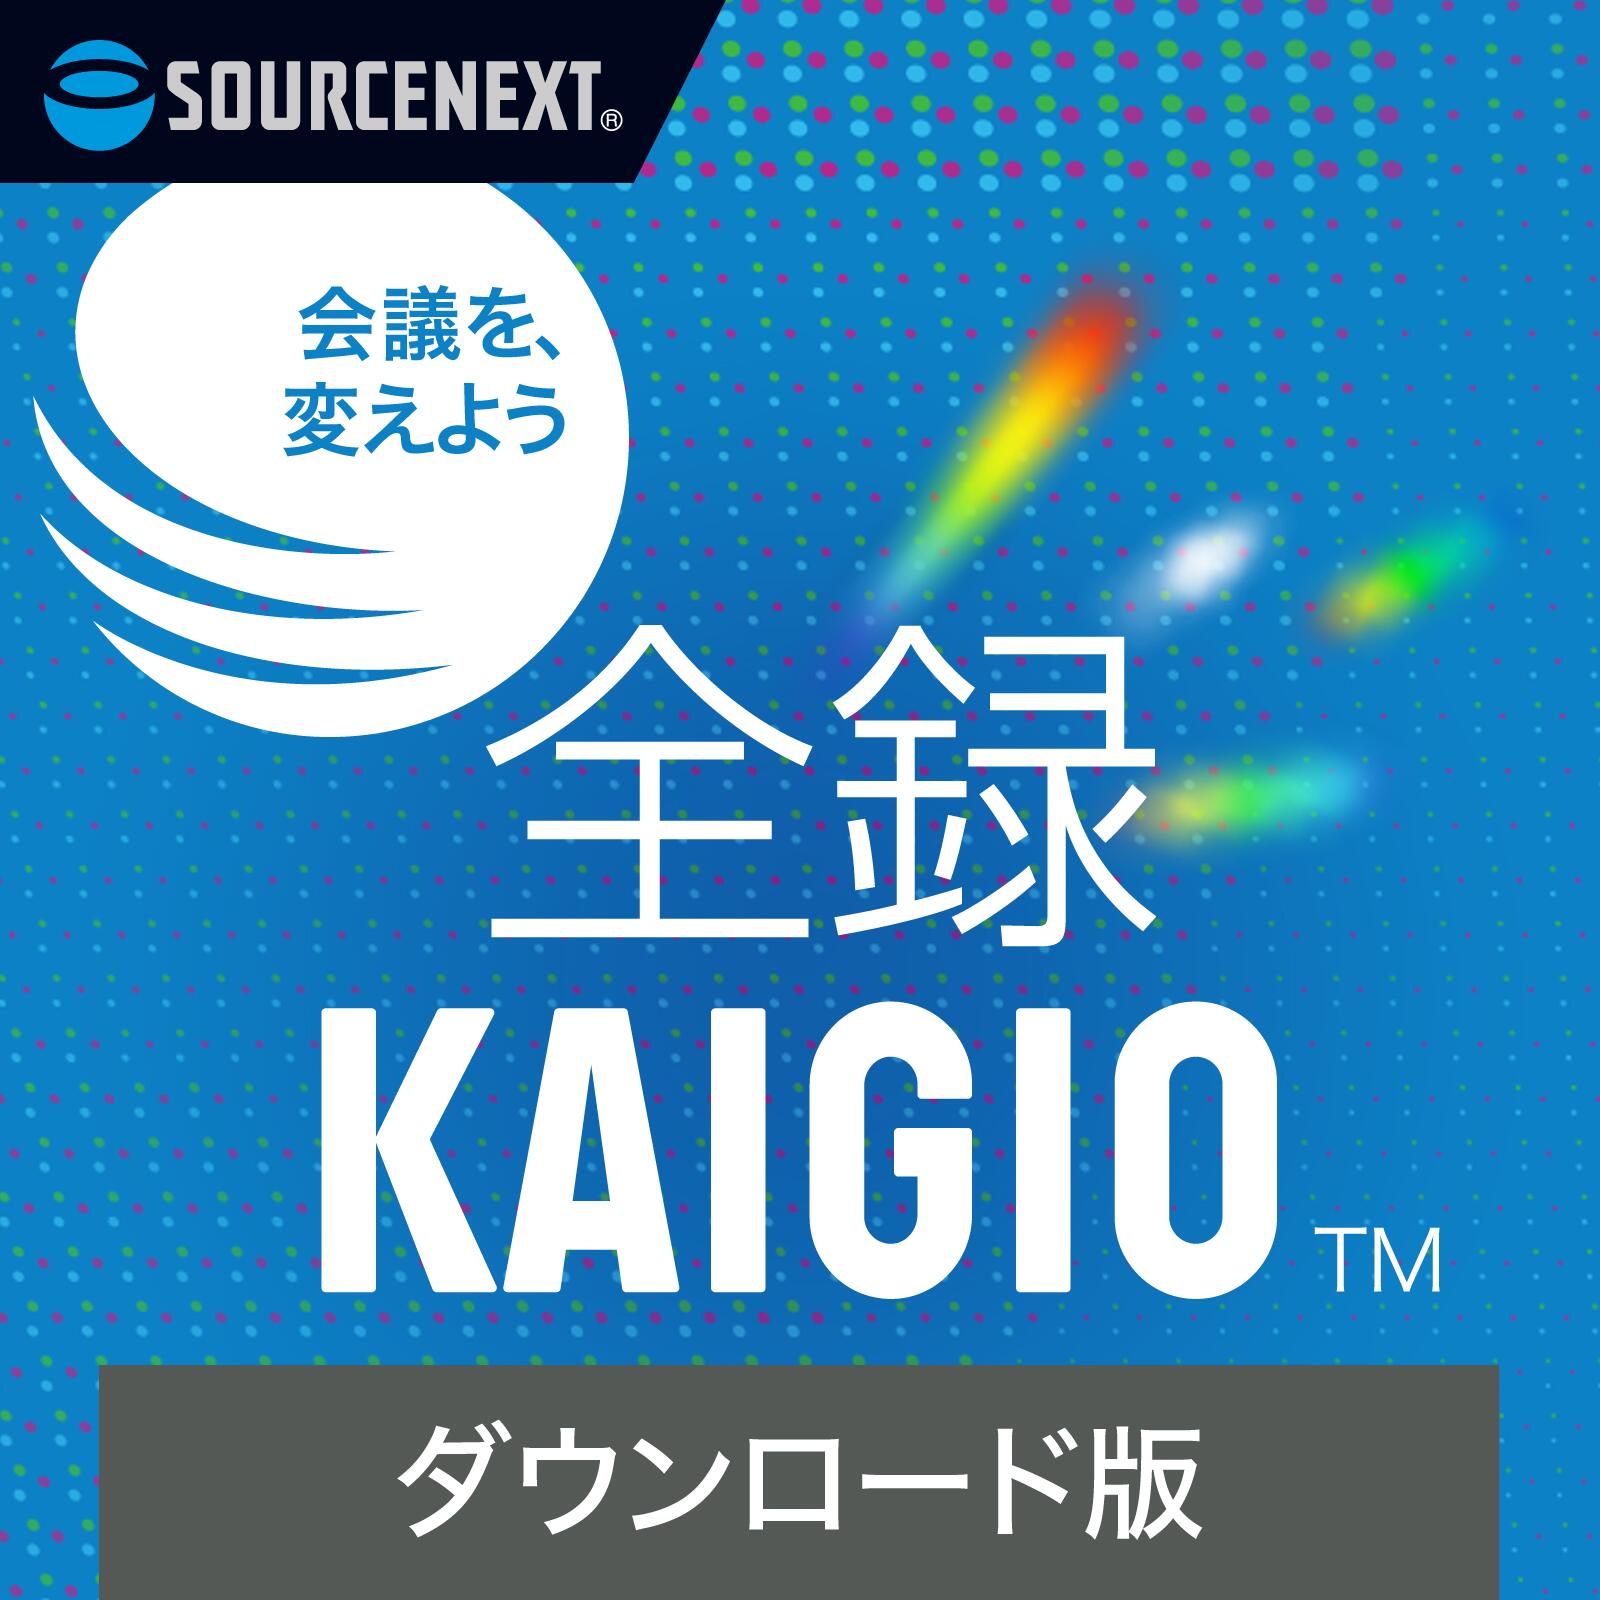 全録KAIGIO【ダウンロード版】DL_SNR Web会議 録画・録音ソフト ソースネクスト